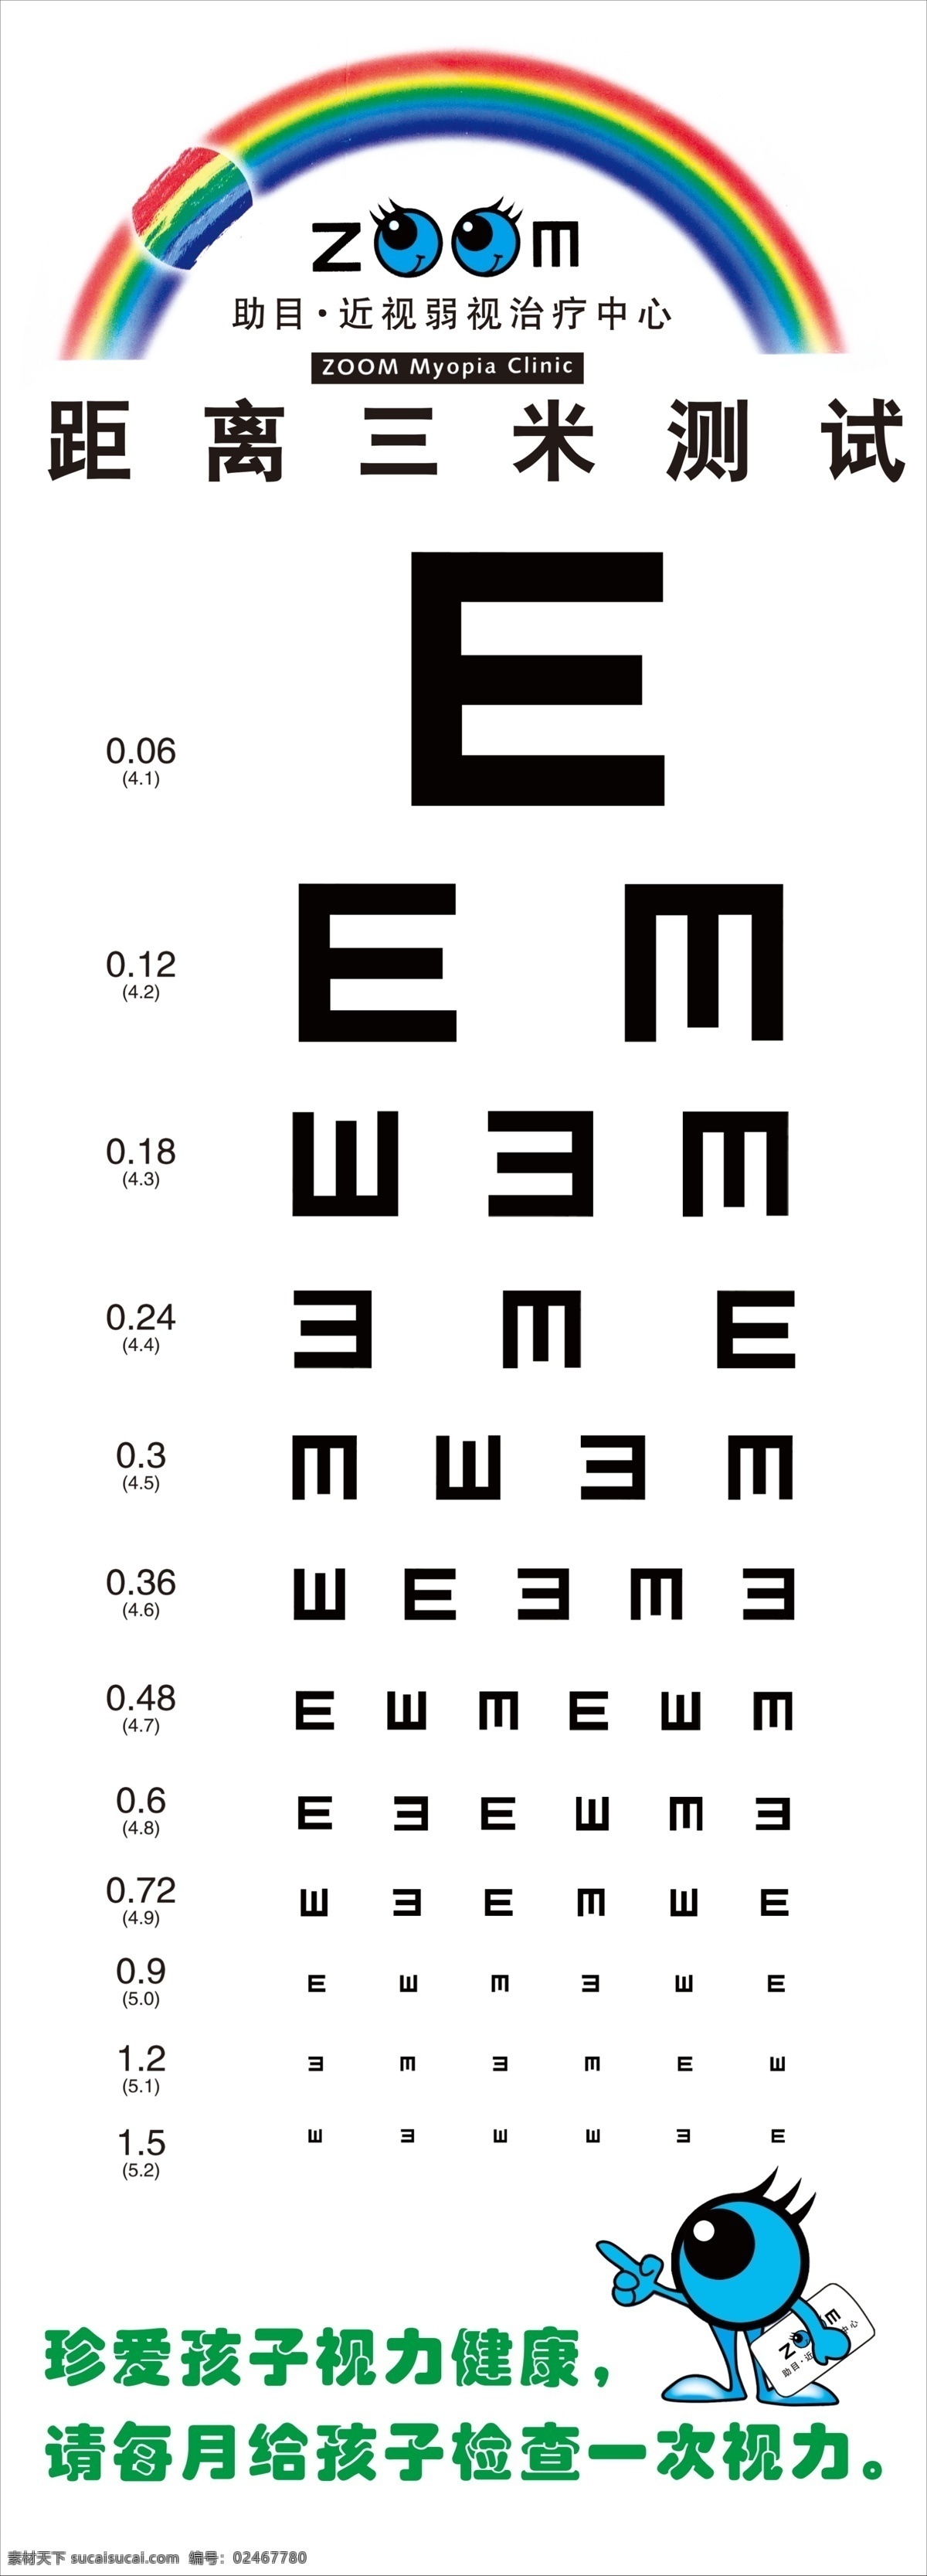 视力表 眼睛 视力 孩子视力 孩子健康 医学类